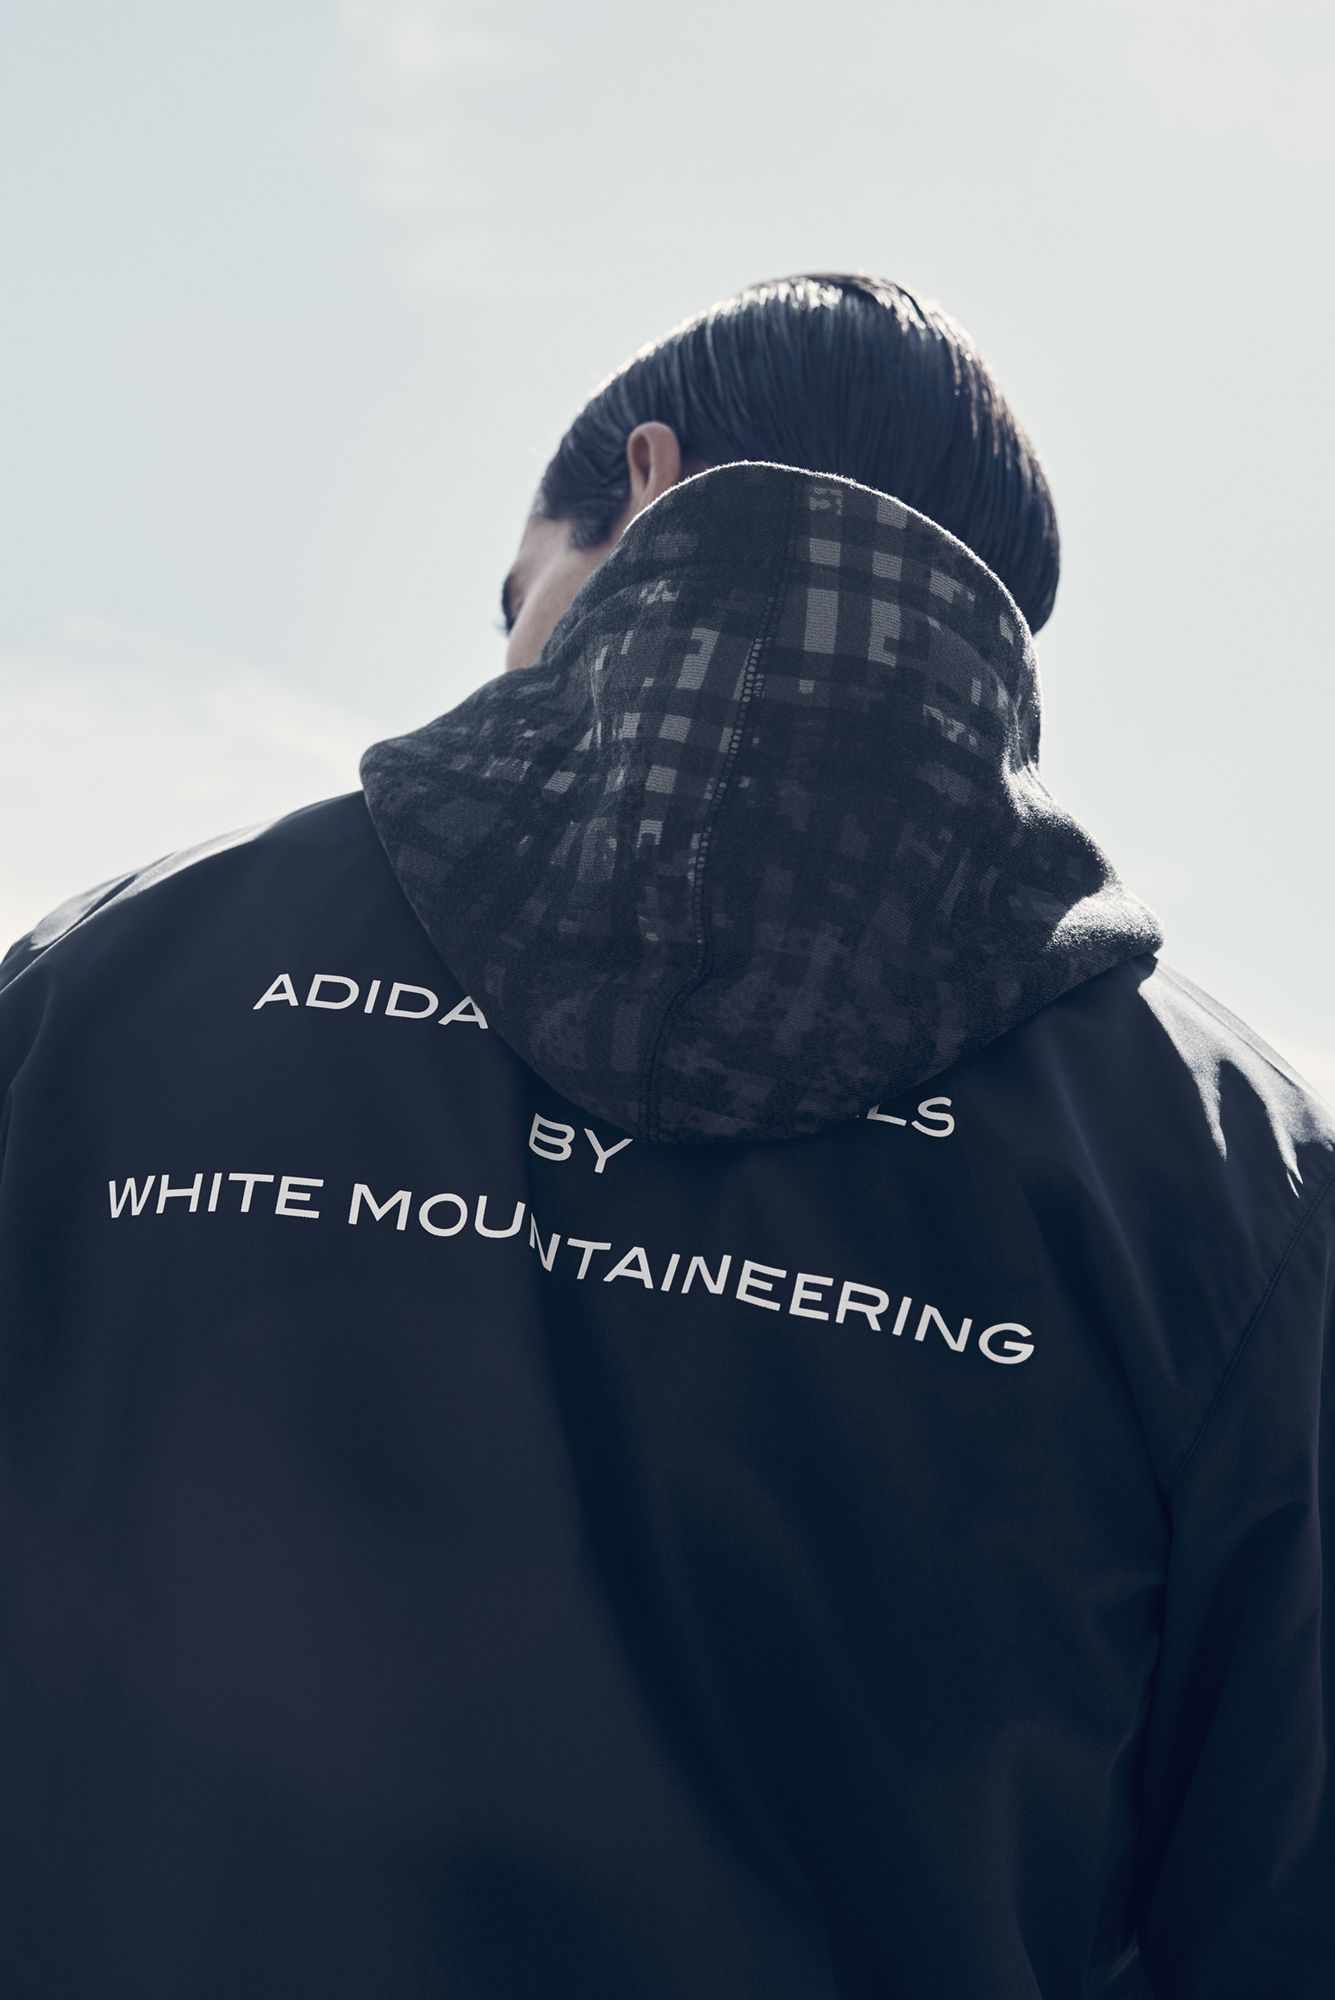 adidas originals White Mountaineering: la collezione autunno inverno 2016 2017